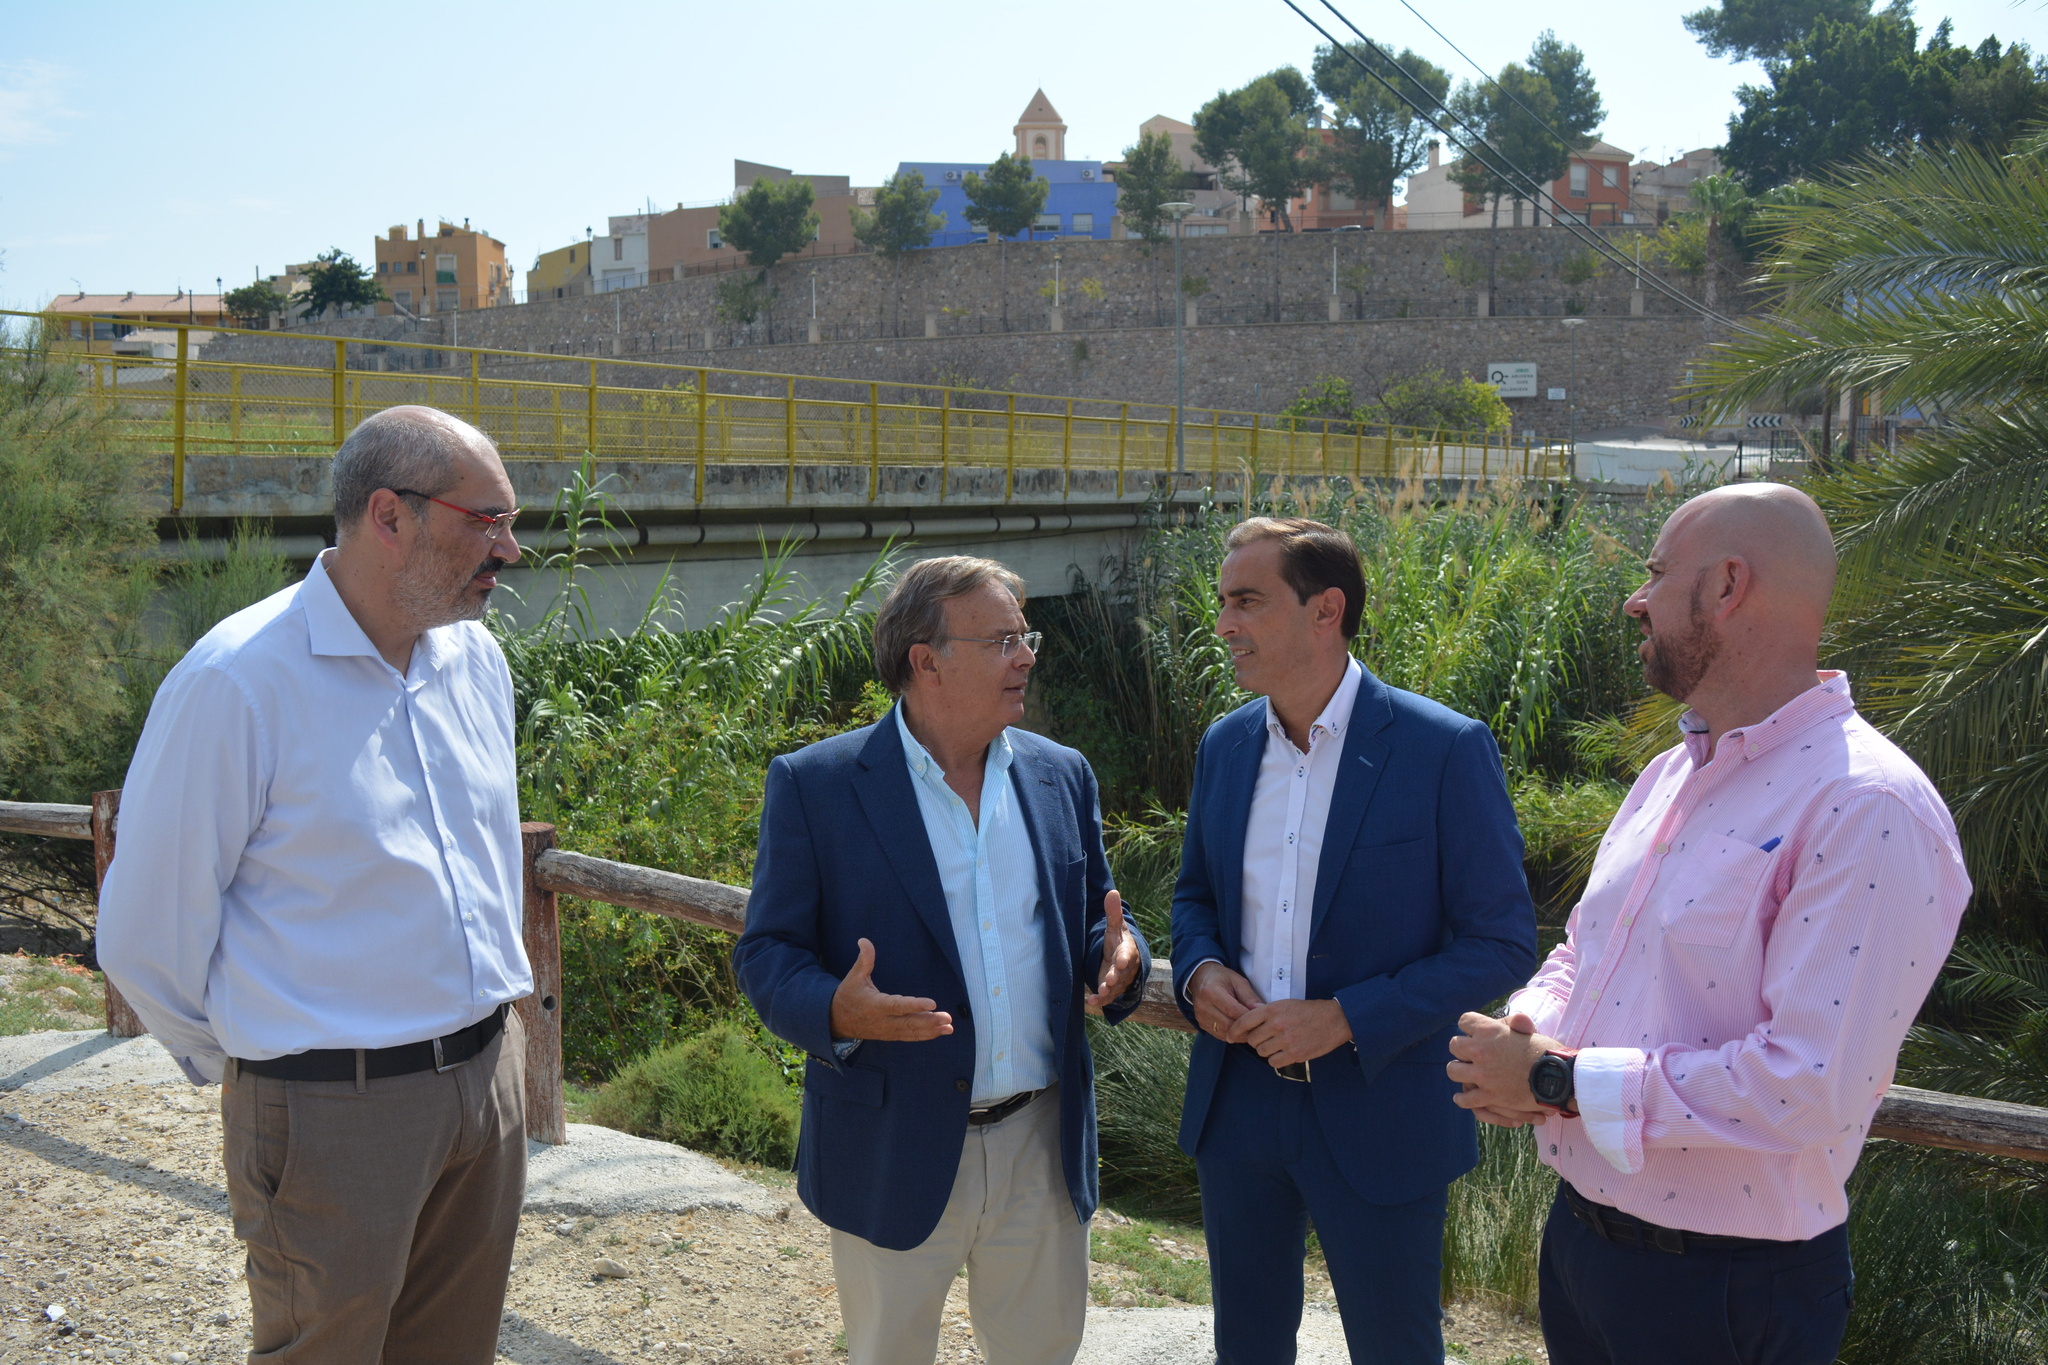 Presentación del futuro puente que conectará Ulea y Villanueva del Río Segura